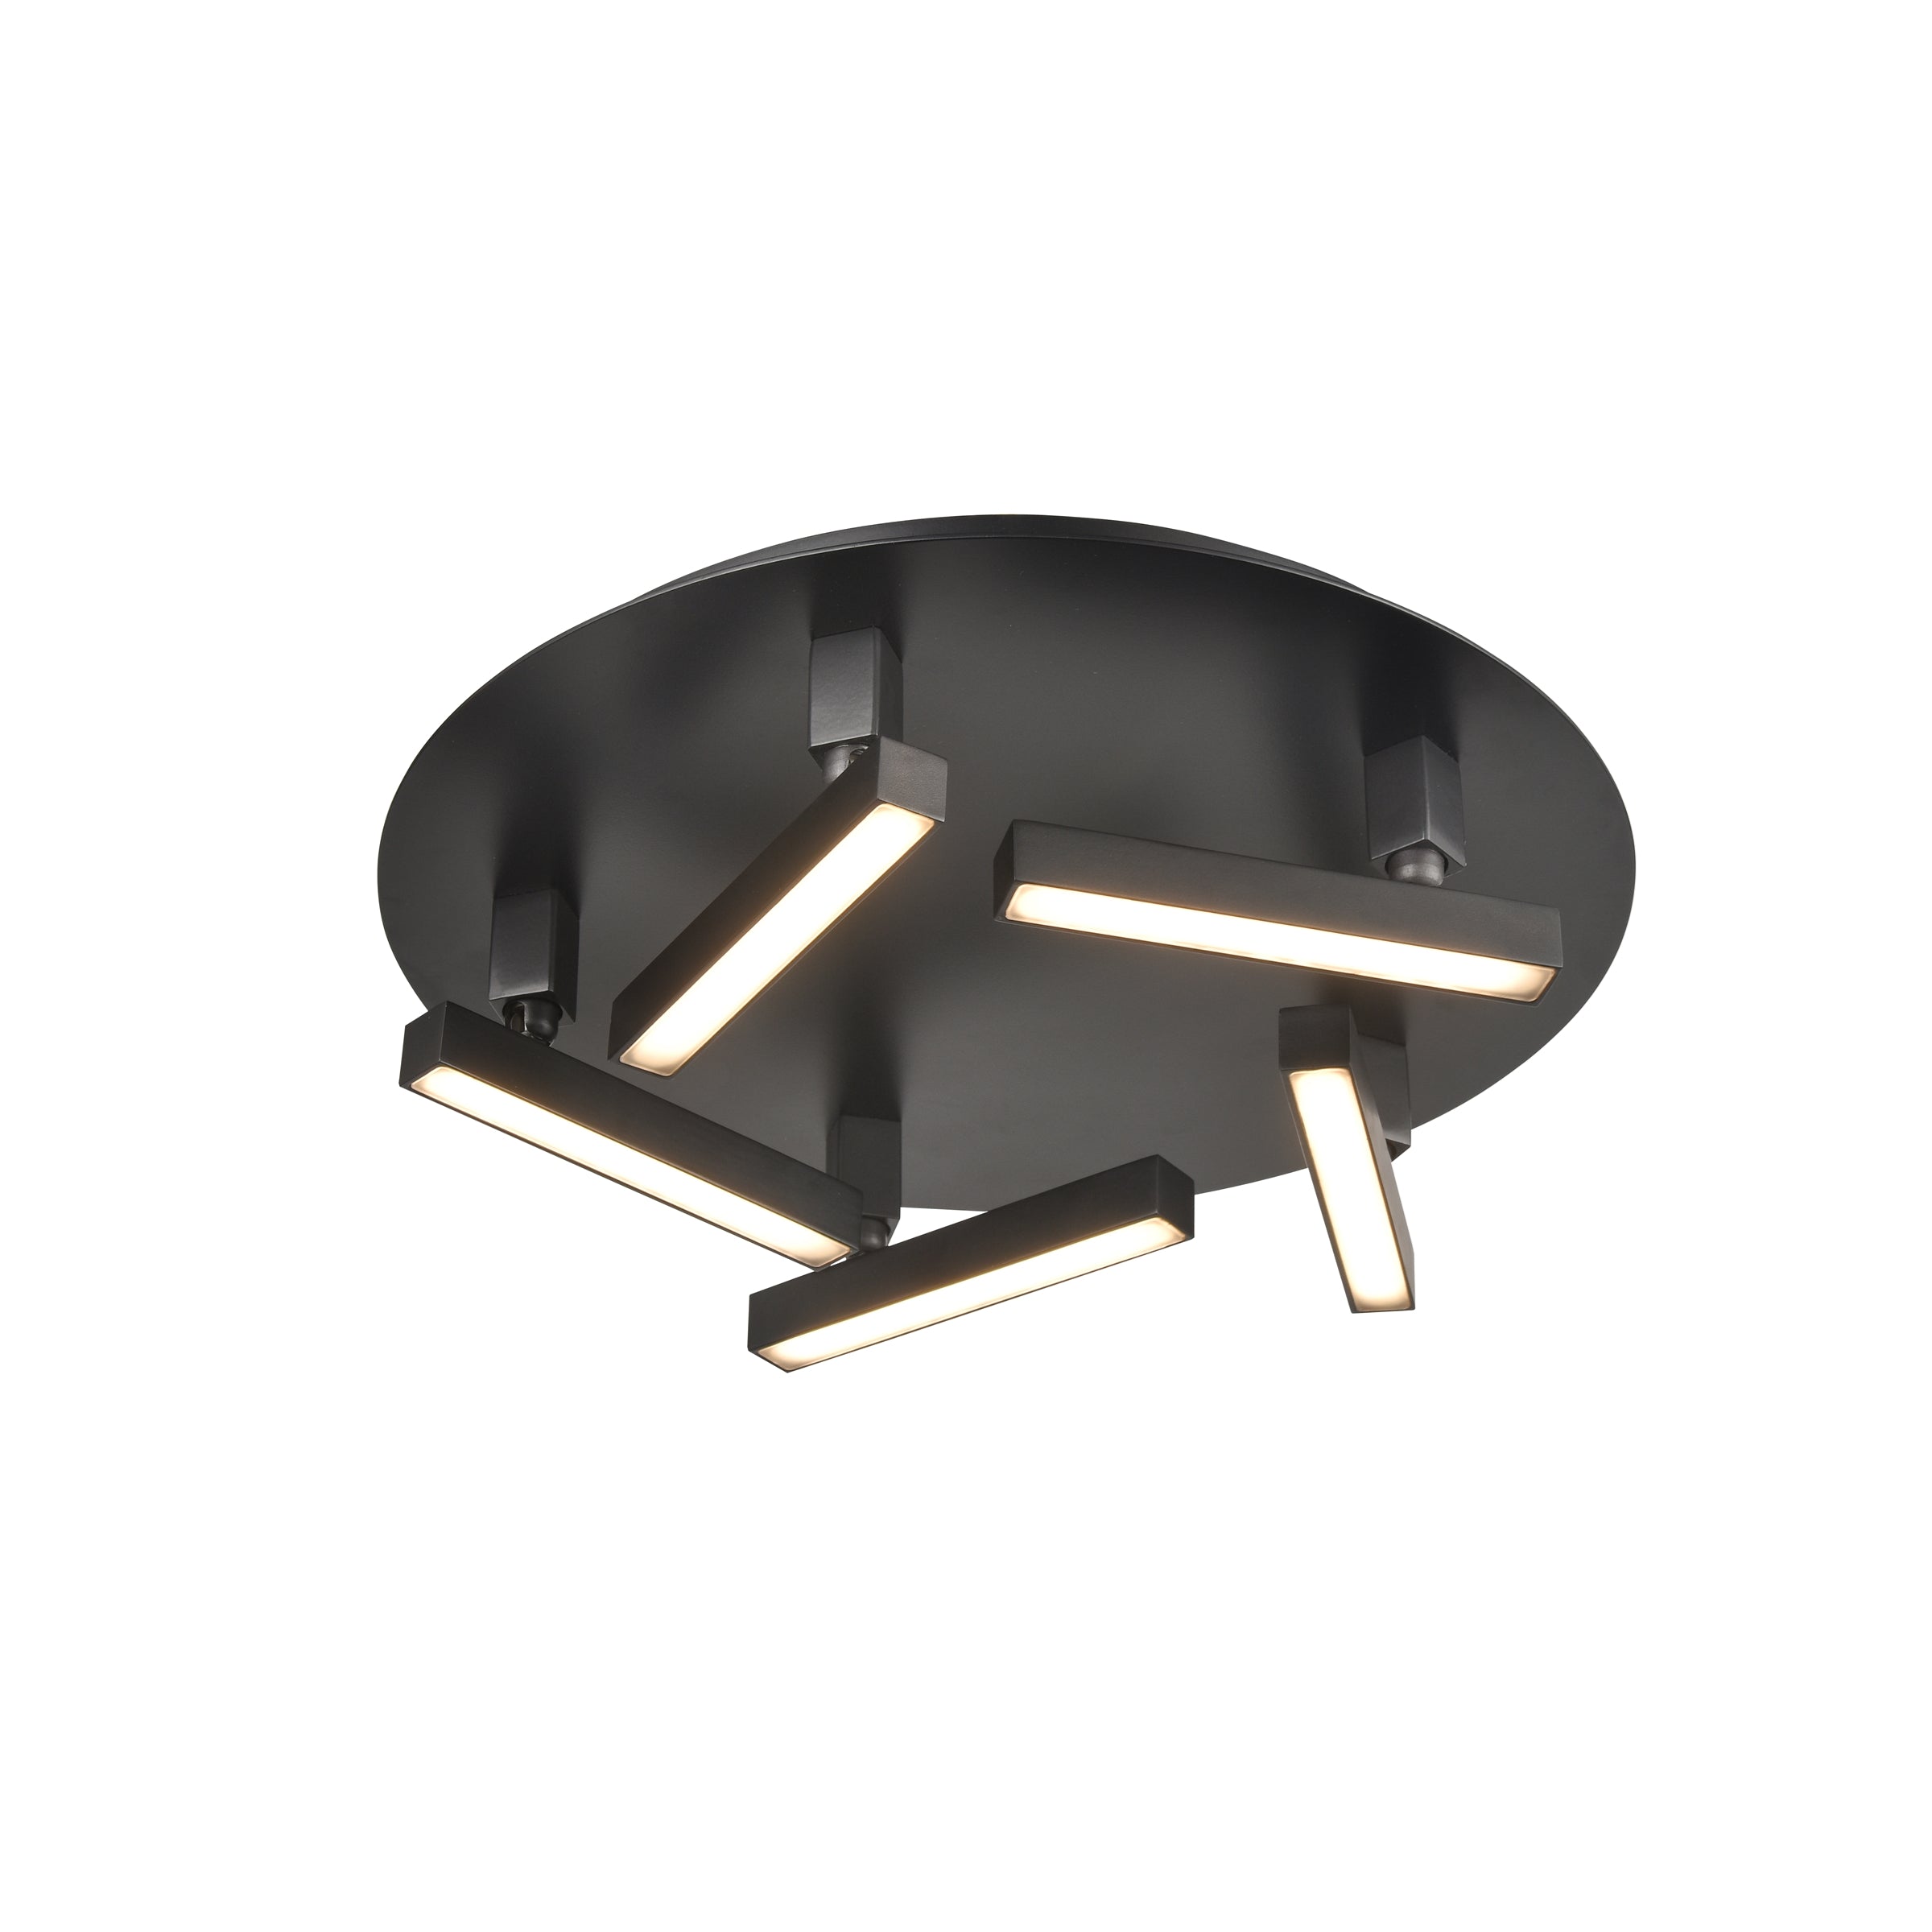 Gammahydrae AC LED Flush mount Black INTEGRATED LED - DVP44753EB | DVI